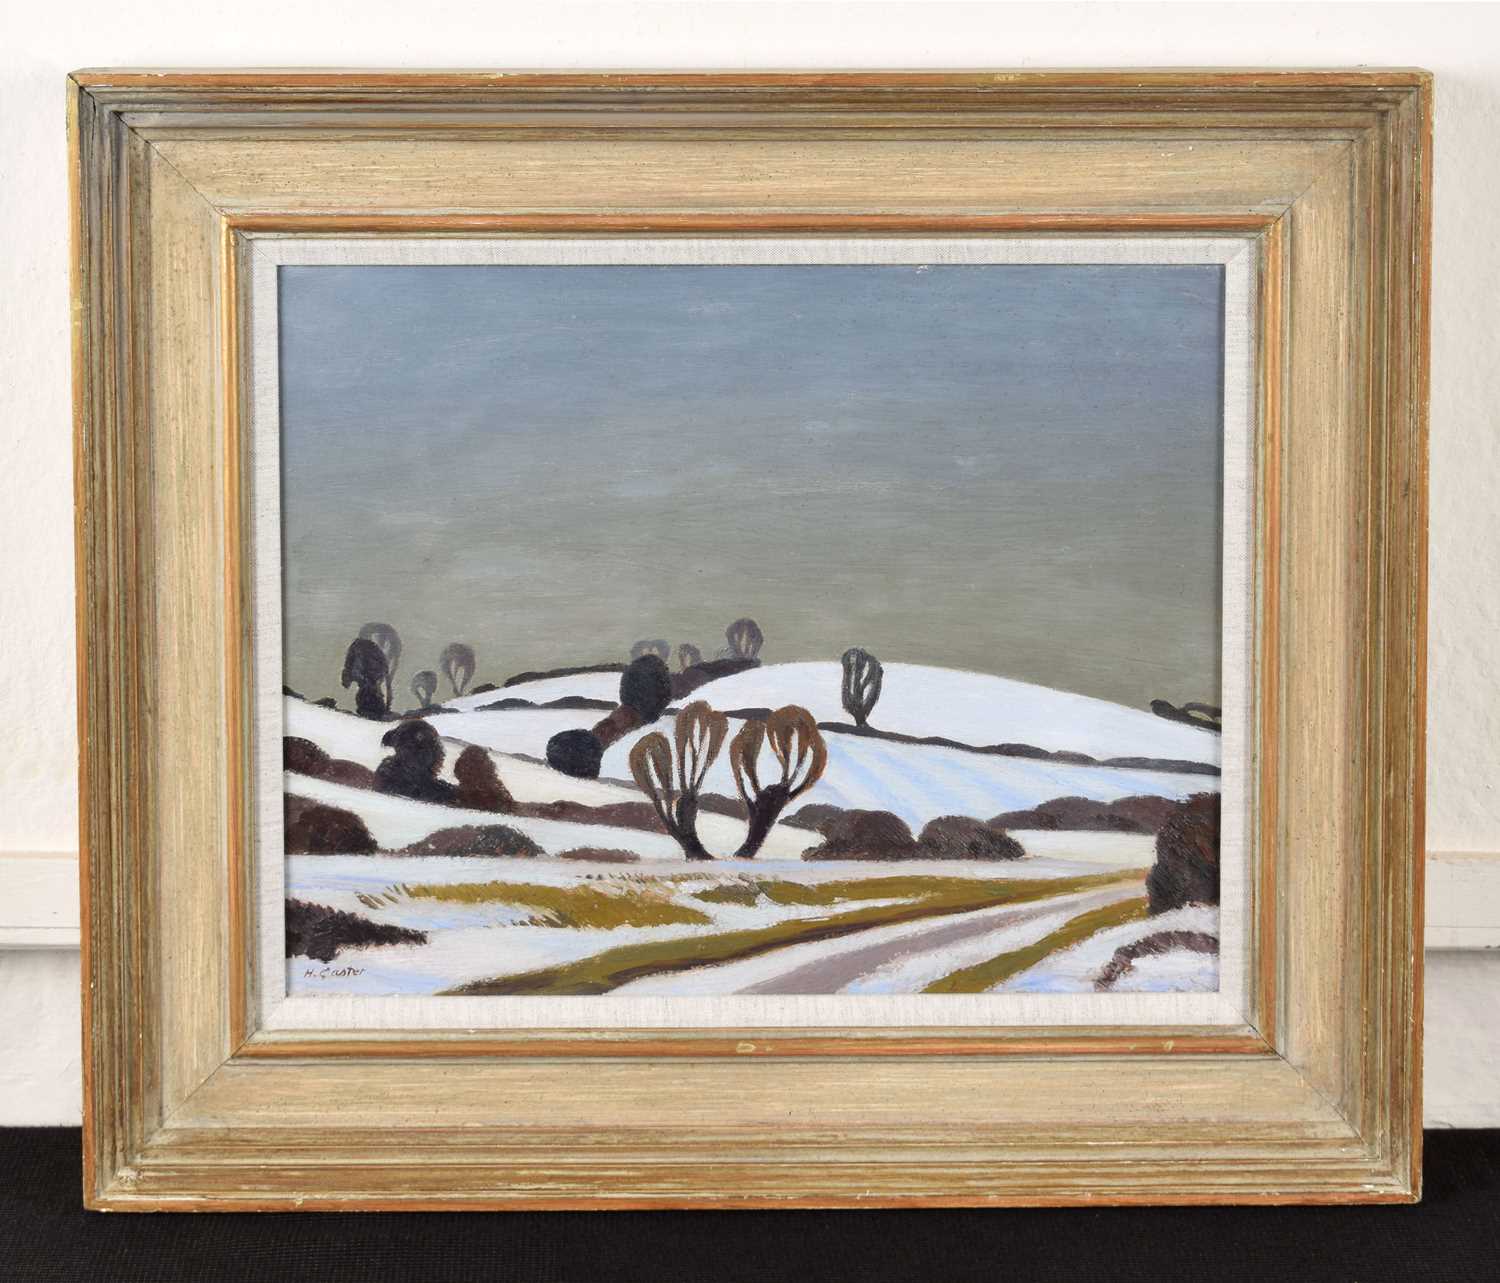 Harold Gaster (British 1906-1986) "Winter Landscape" - Image 2 of 2